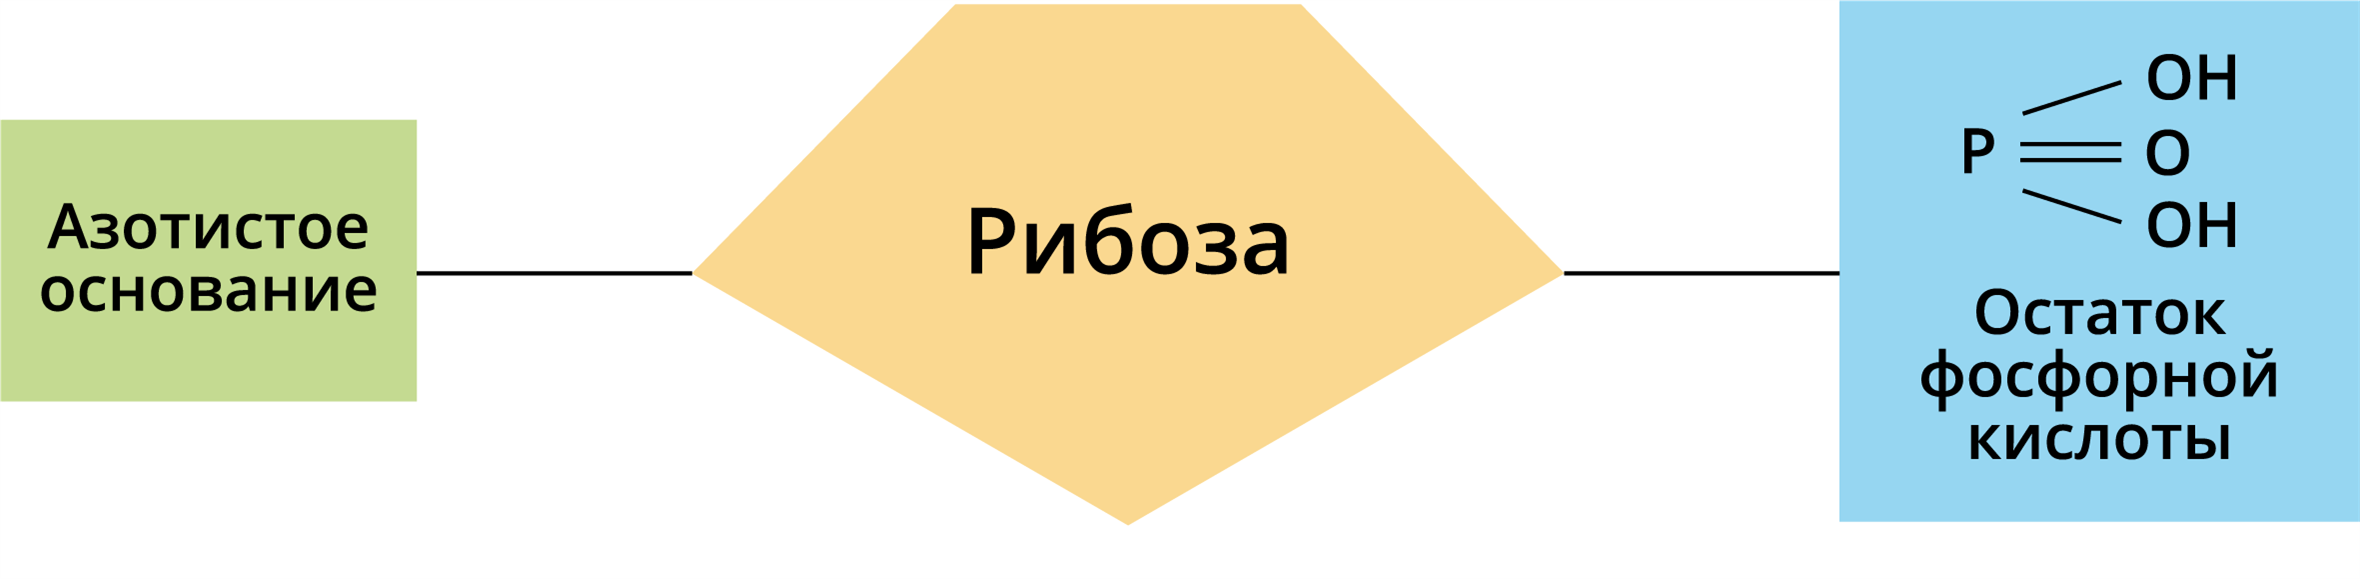 Схема азотистое основание рибоза остаток фосфорной кислоты. Азотистое основание рибоза остаток фосфорной кислоты. Азотистое основание рибоза остаток фосфорной. Остаток фосфорной кислоты рибоза. Азотистое основание рибоза остаток